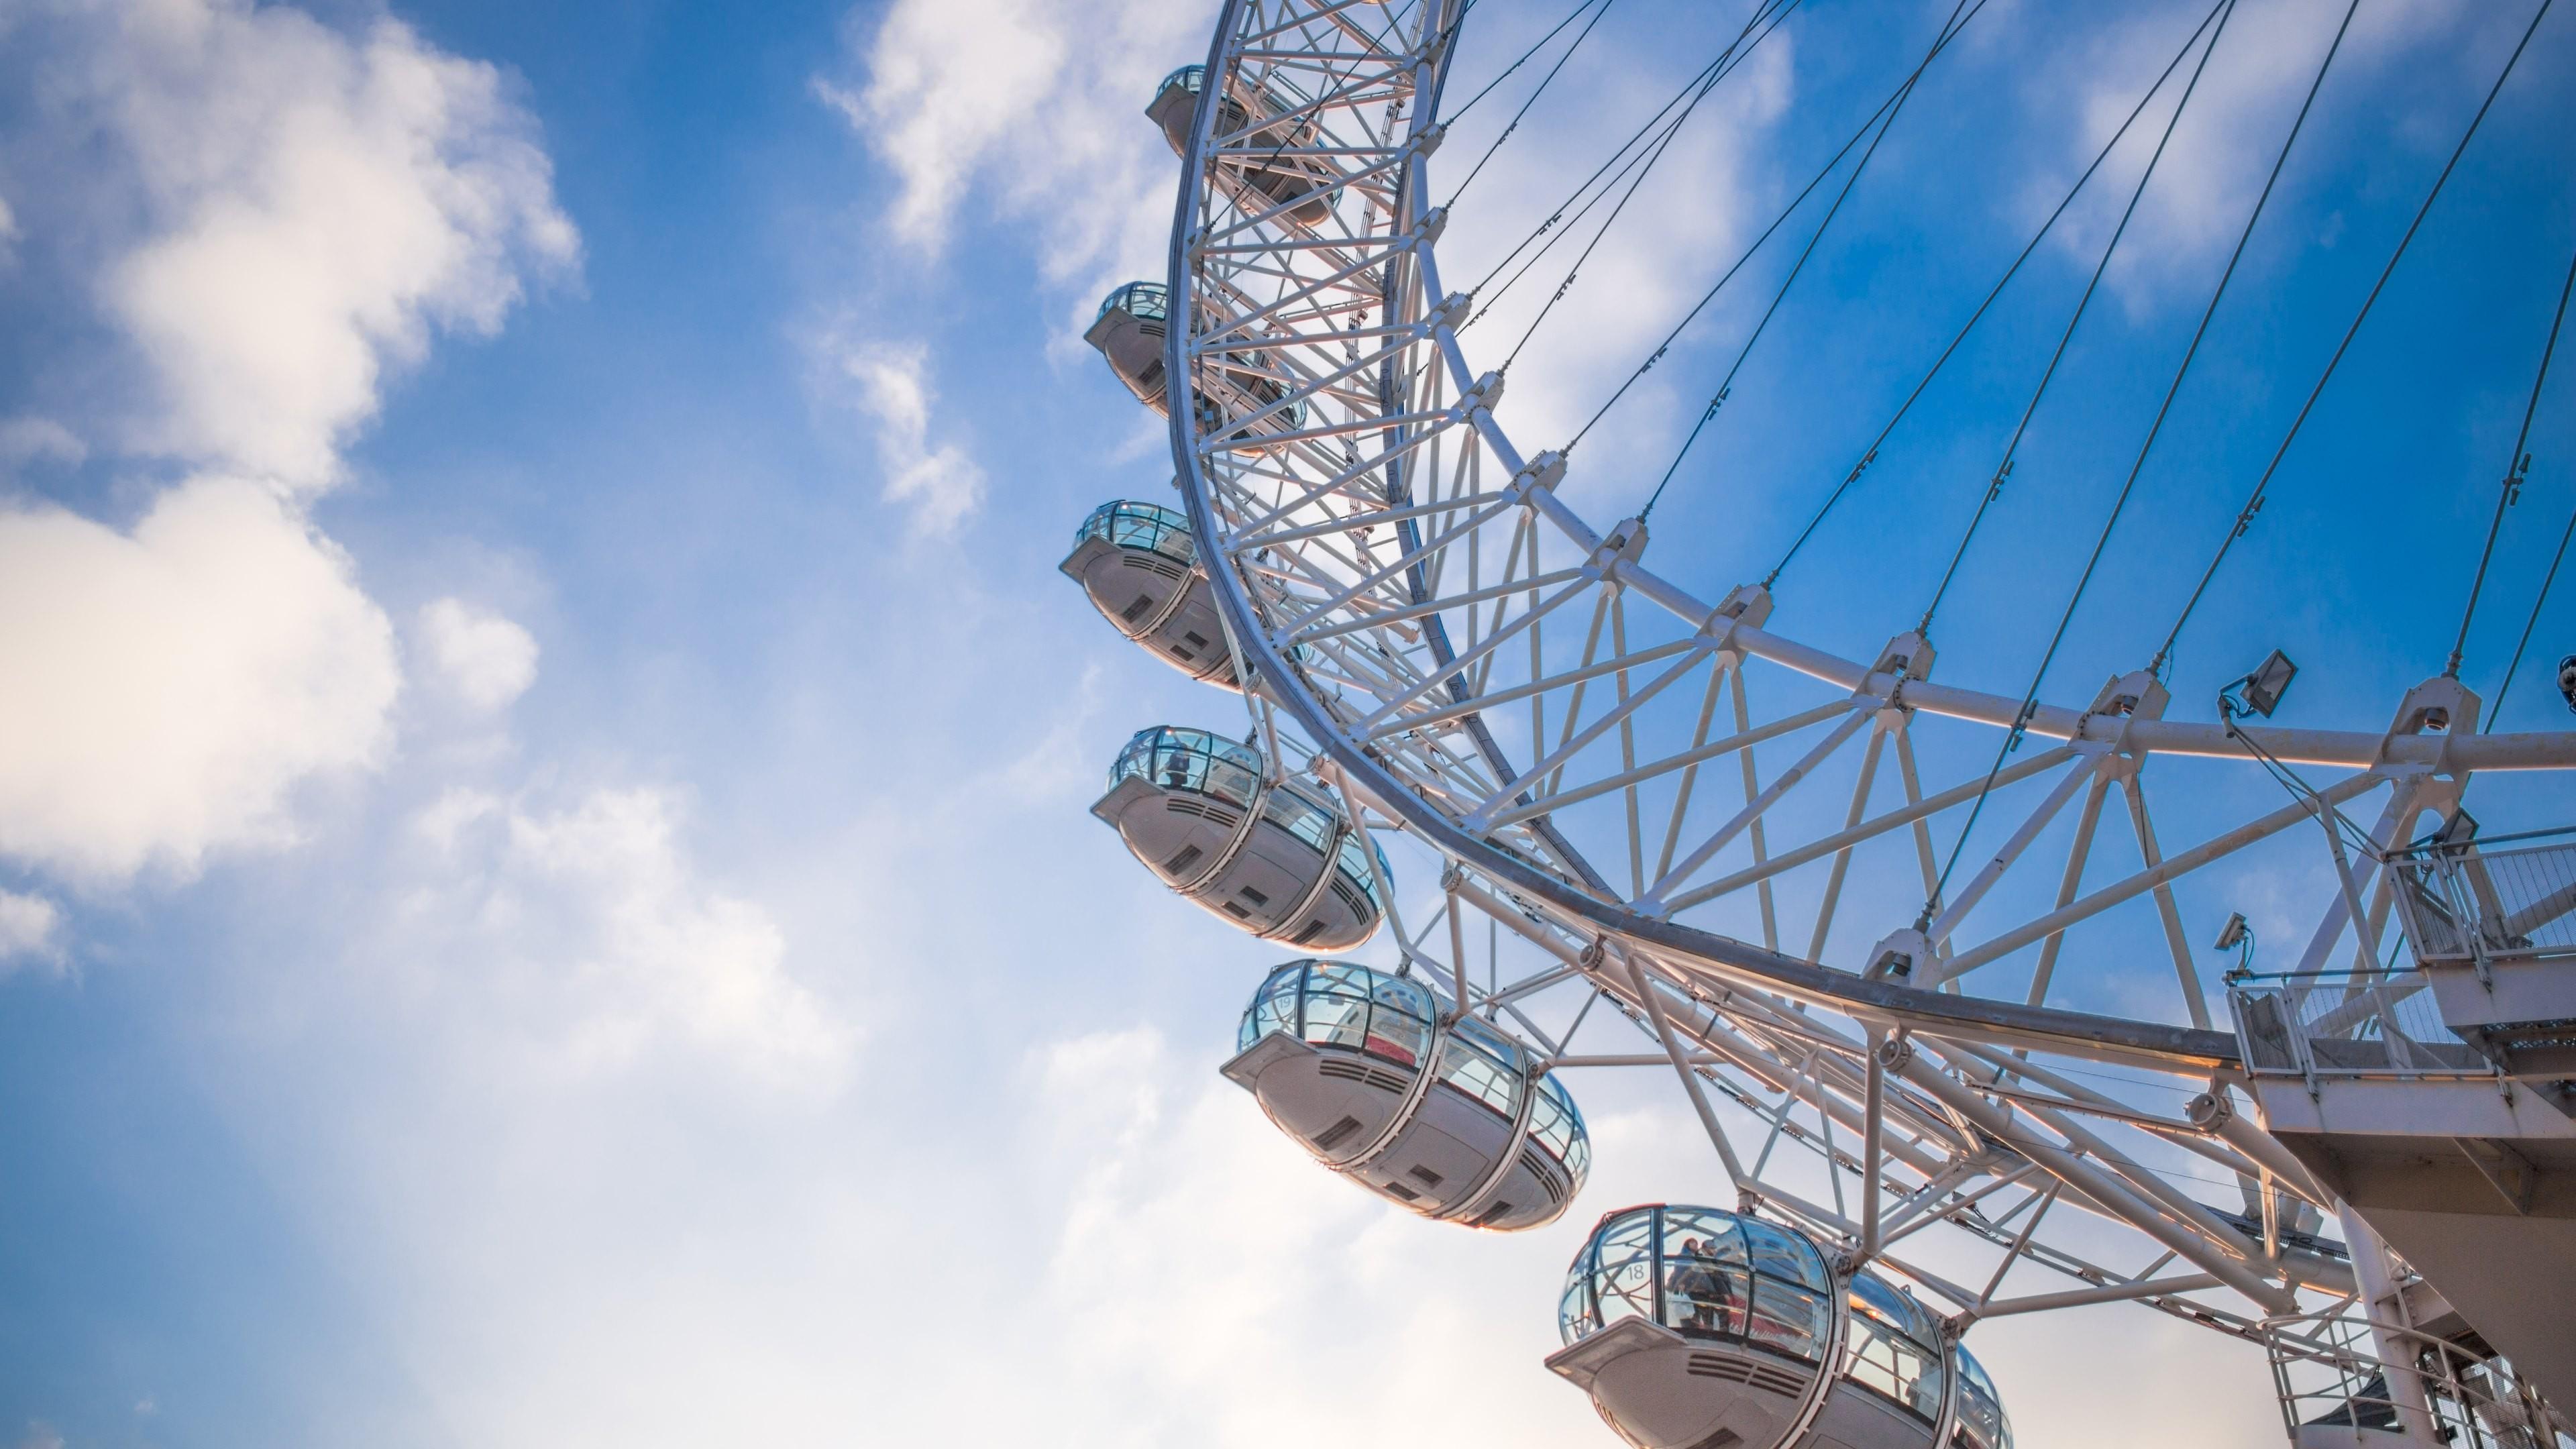 Ferris Wheel, London, England 4K wallpaper download